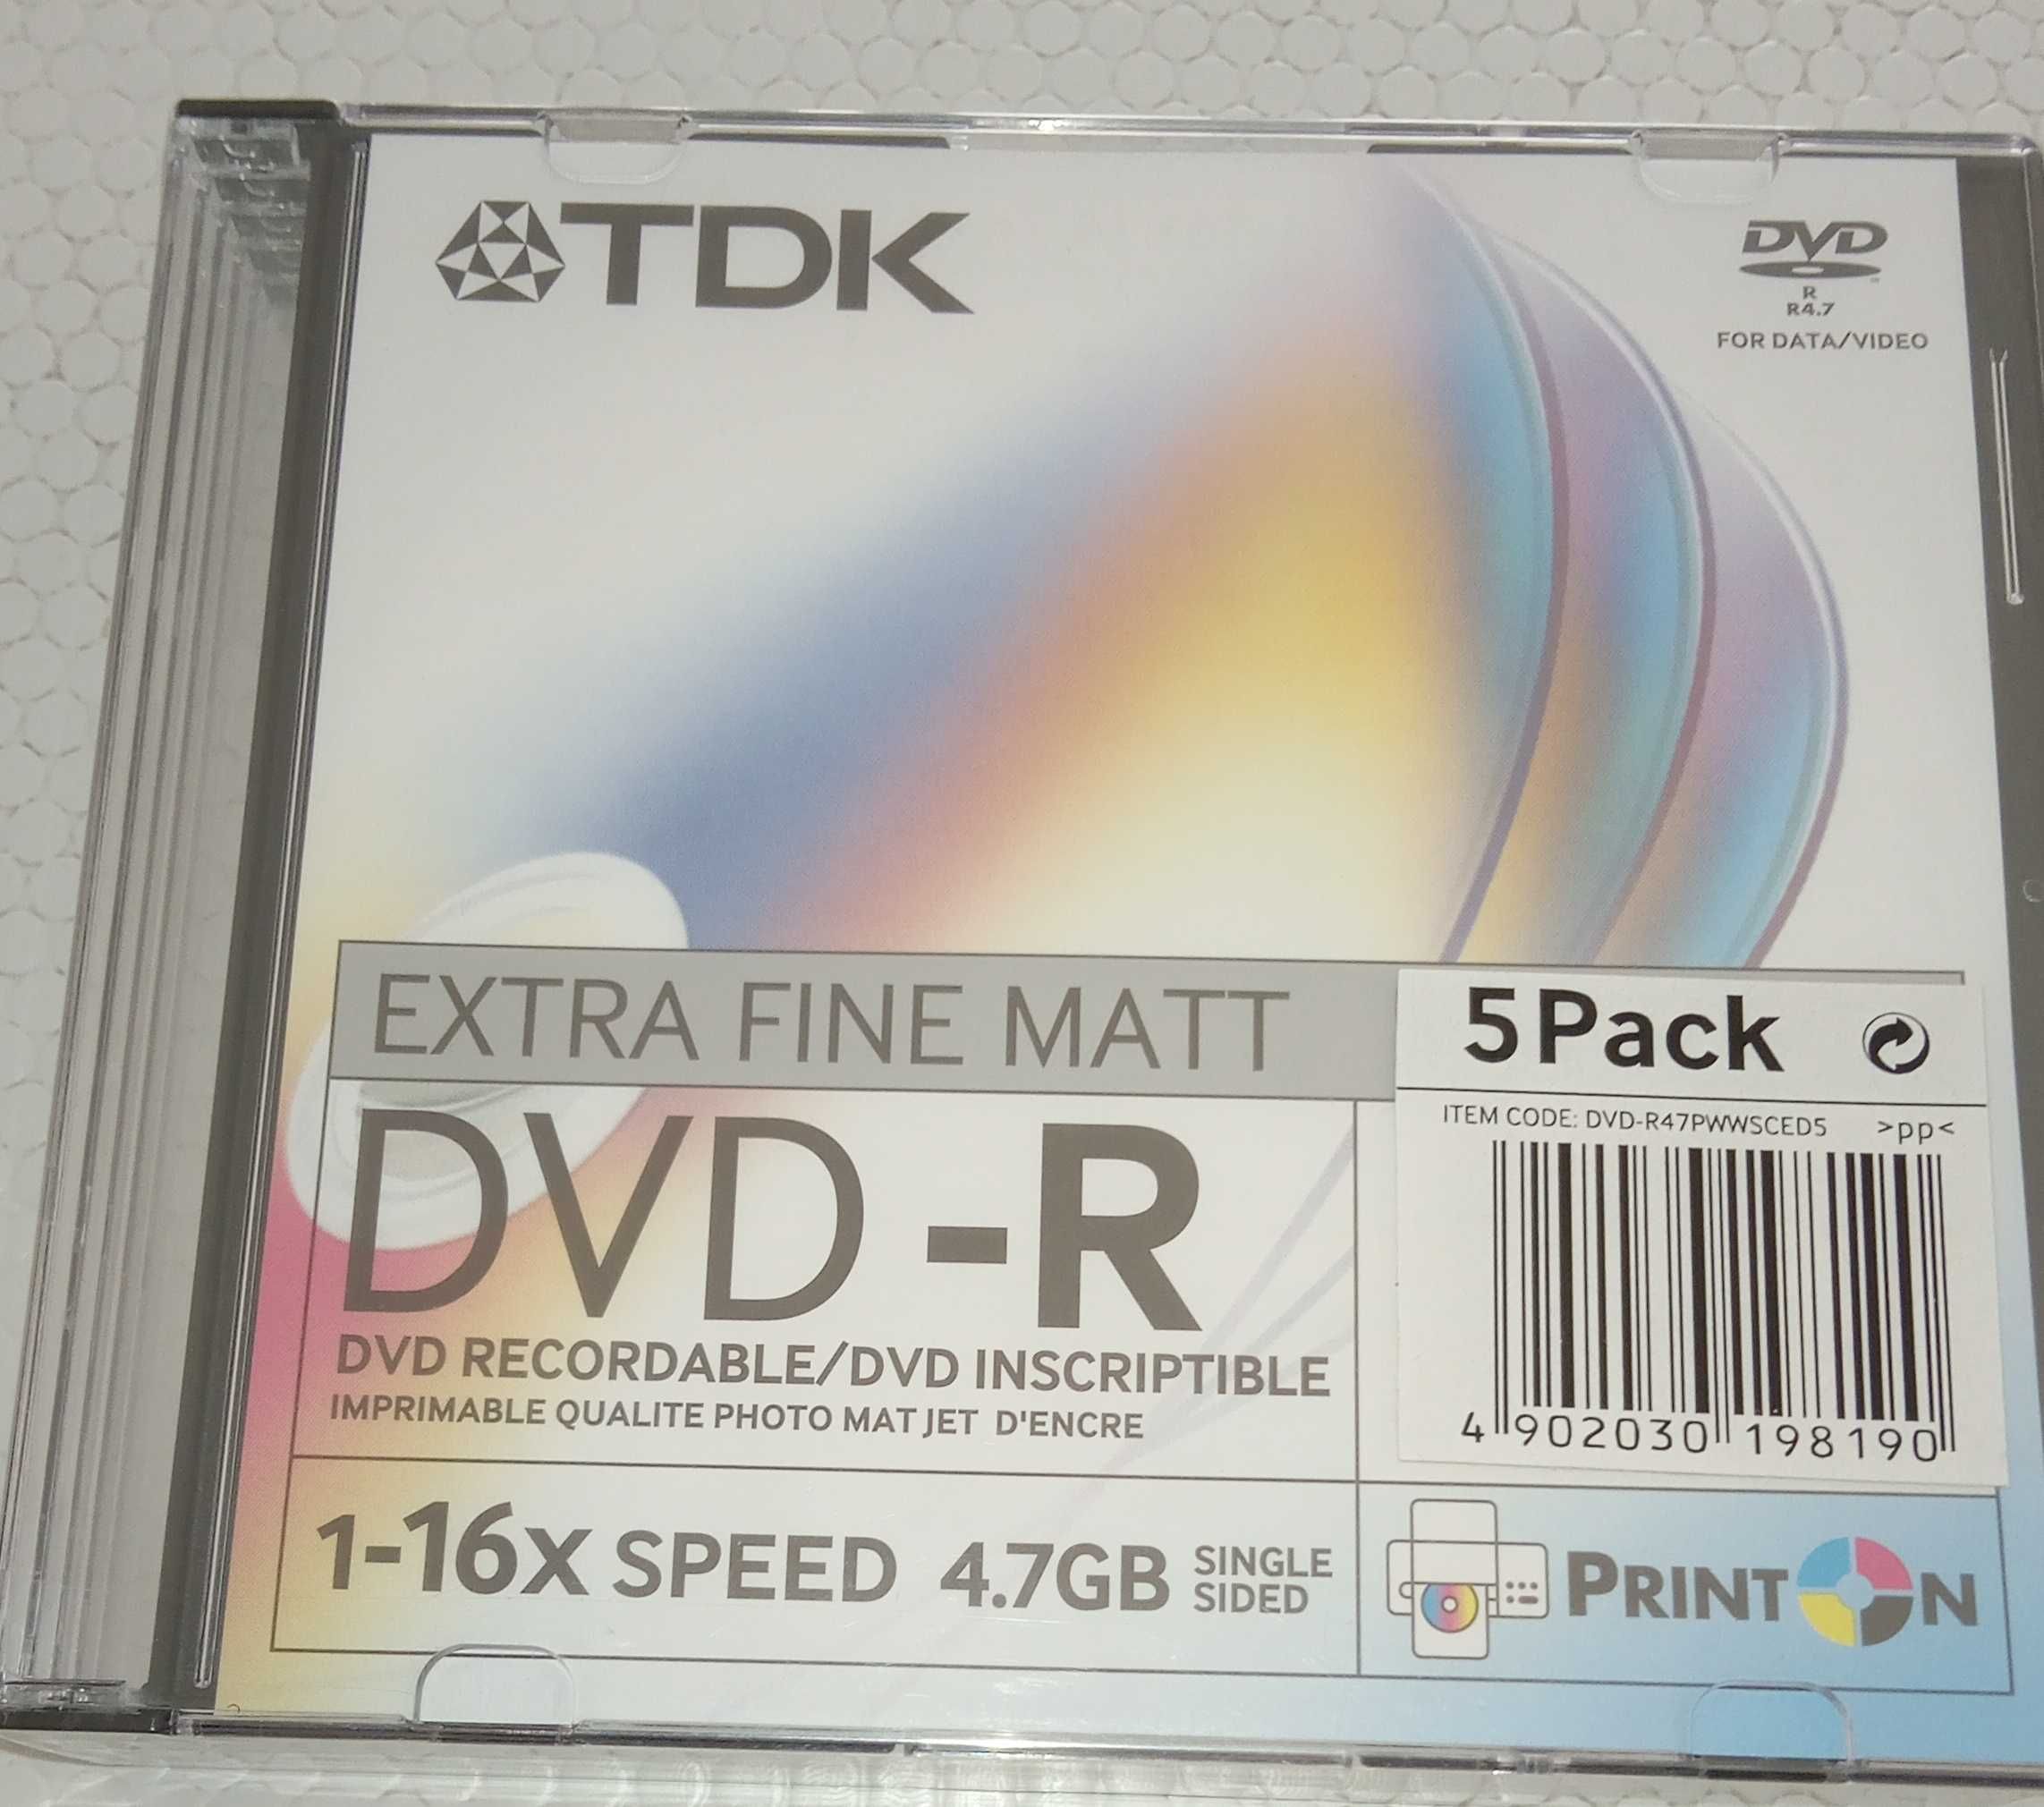 DVD-R , pack de 5, com cx e Dvd 8.5, com cx